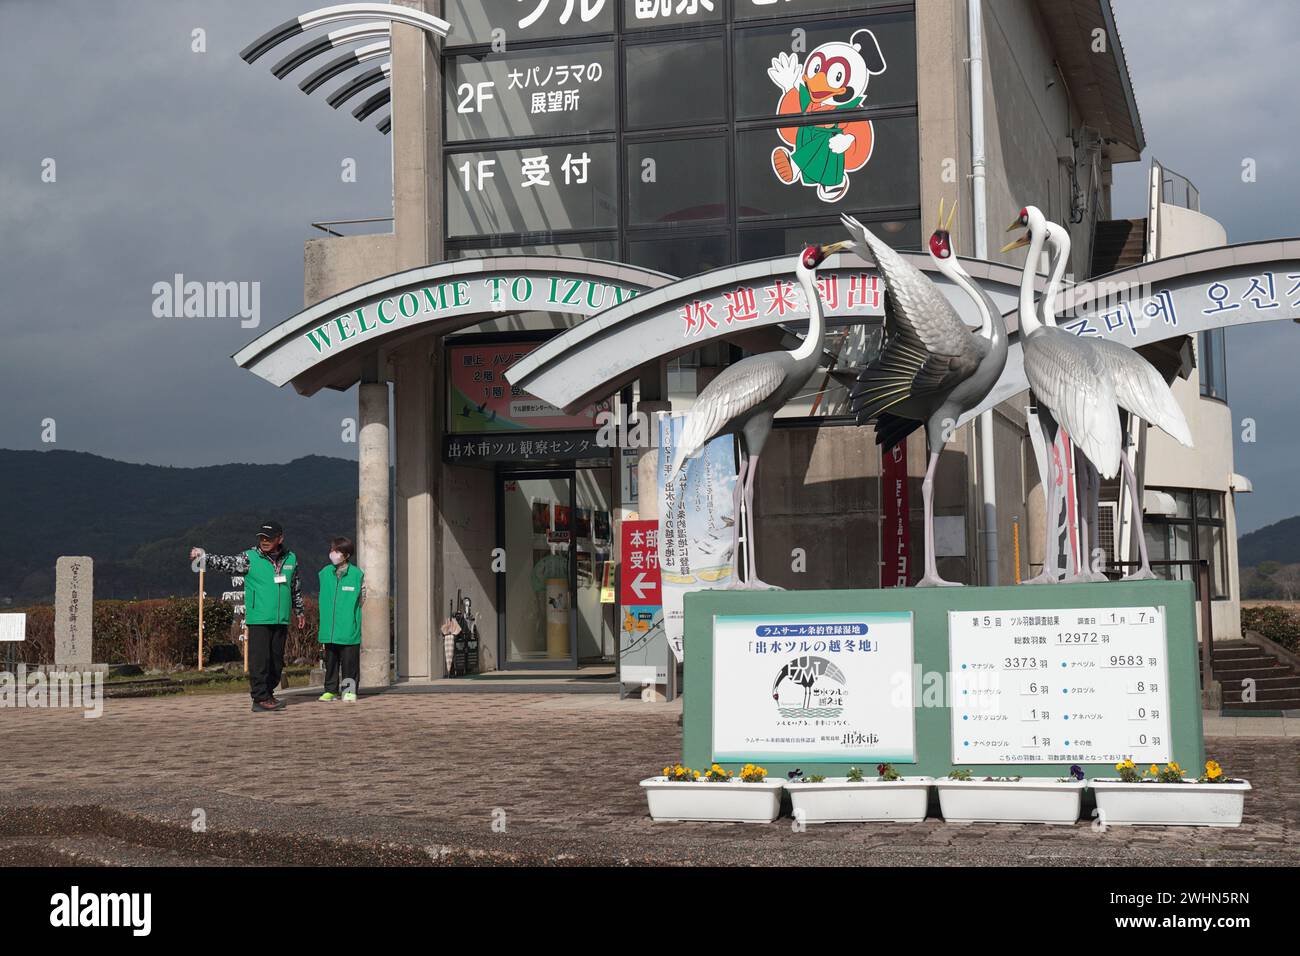 Vista della parte anteriore del centro visitatori di Arasaki, della città di Izumi, Kyushu, Giappone (gru svernanti) Foto Stock